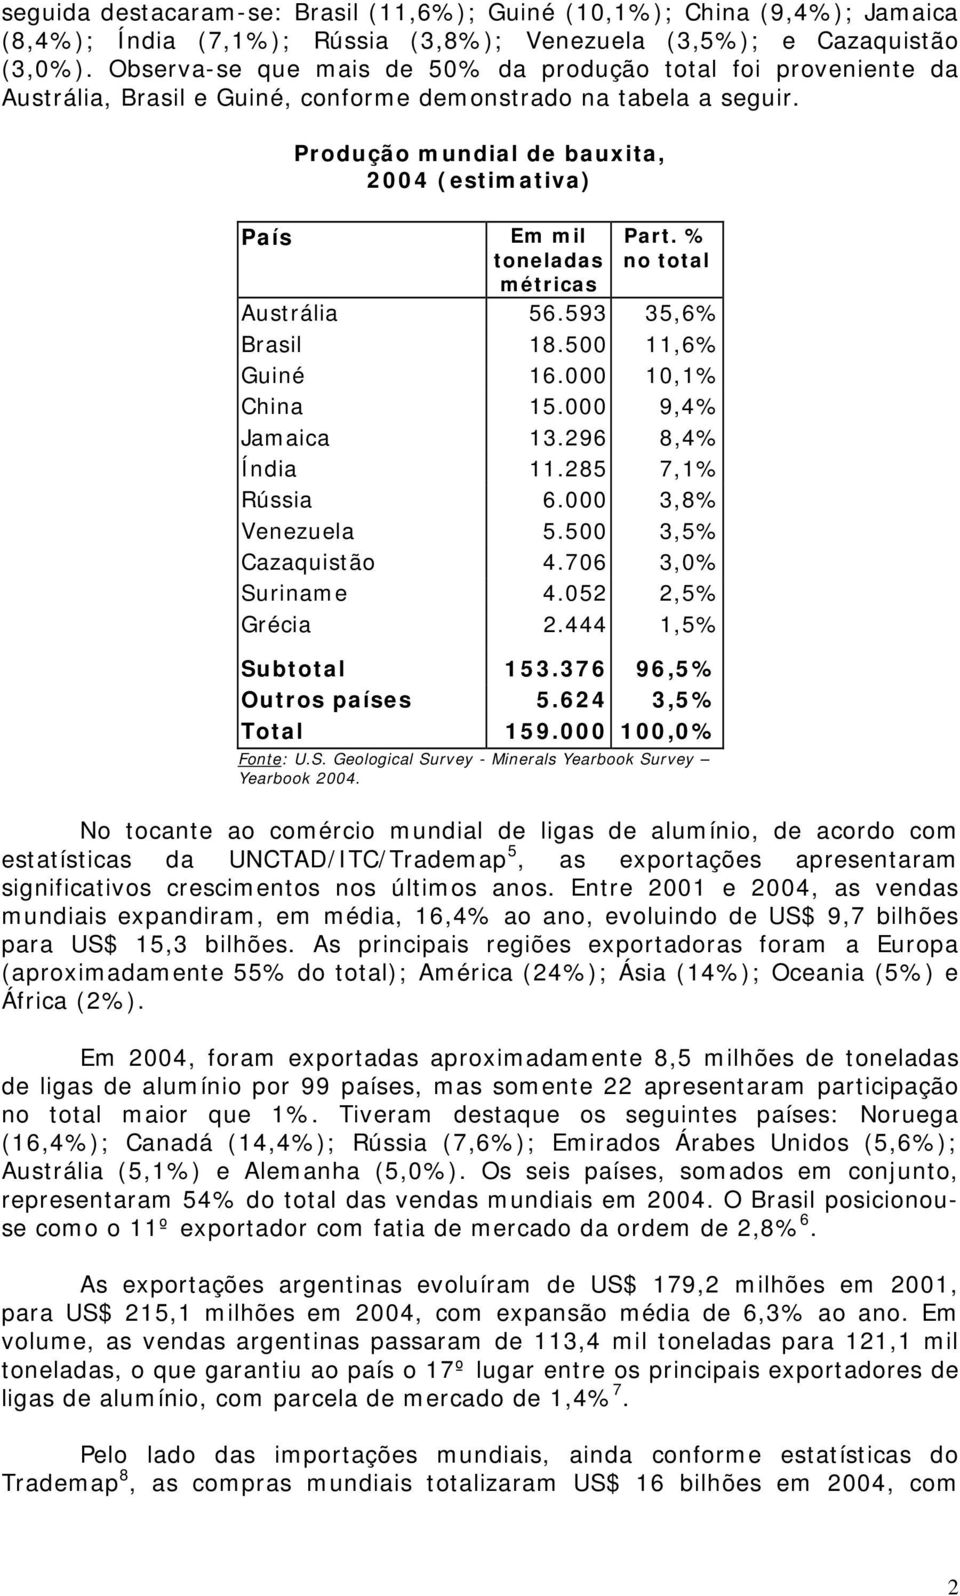 País Produção mundial de bauxita, 2004 (estimativa) Em mil toneladas métricas Part. % no total Austrália 56.593 35,6% Brasil 18.500 11,6% Guiné 16.000 10,1% China 15.000 9,4% Jamaica 13.